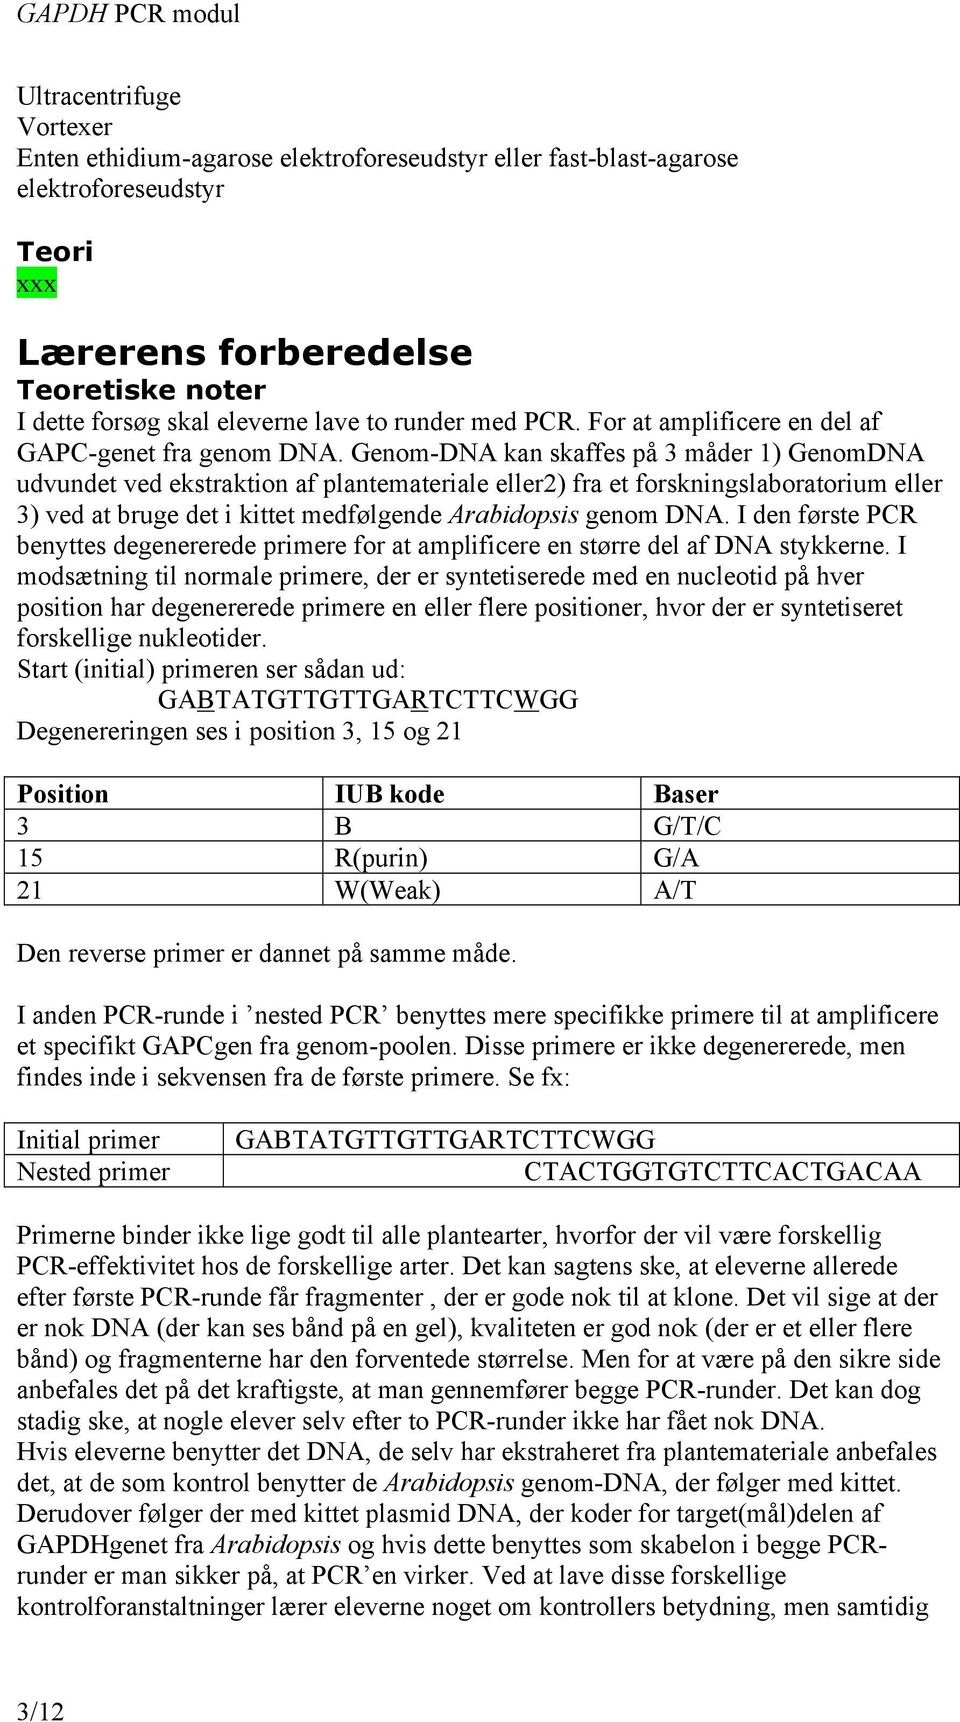 Genom-DNA kan skaffes på 3 måder 1) GenomDNA udvundet ved ekstraktion af plantemateriale eller2) fra et forskningslaboratorium eller 3) ved at bruge det i kittet medfølgende Arabidopsis genom DNA.